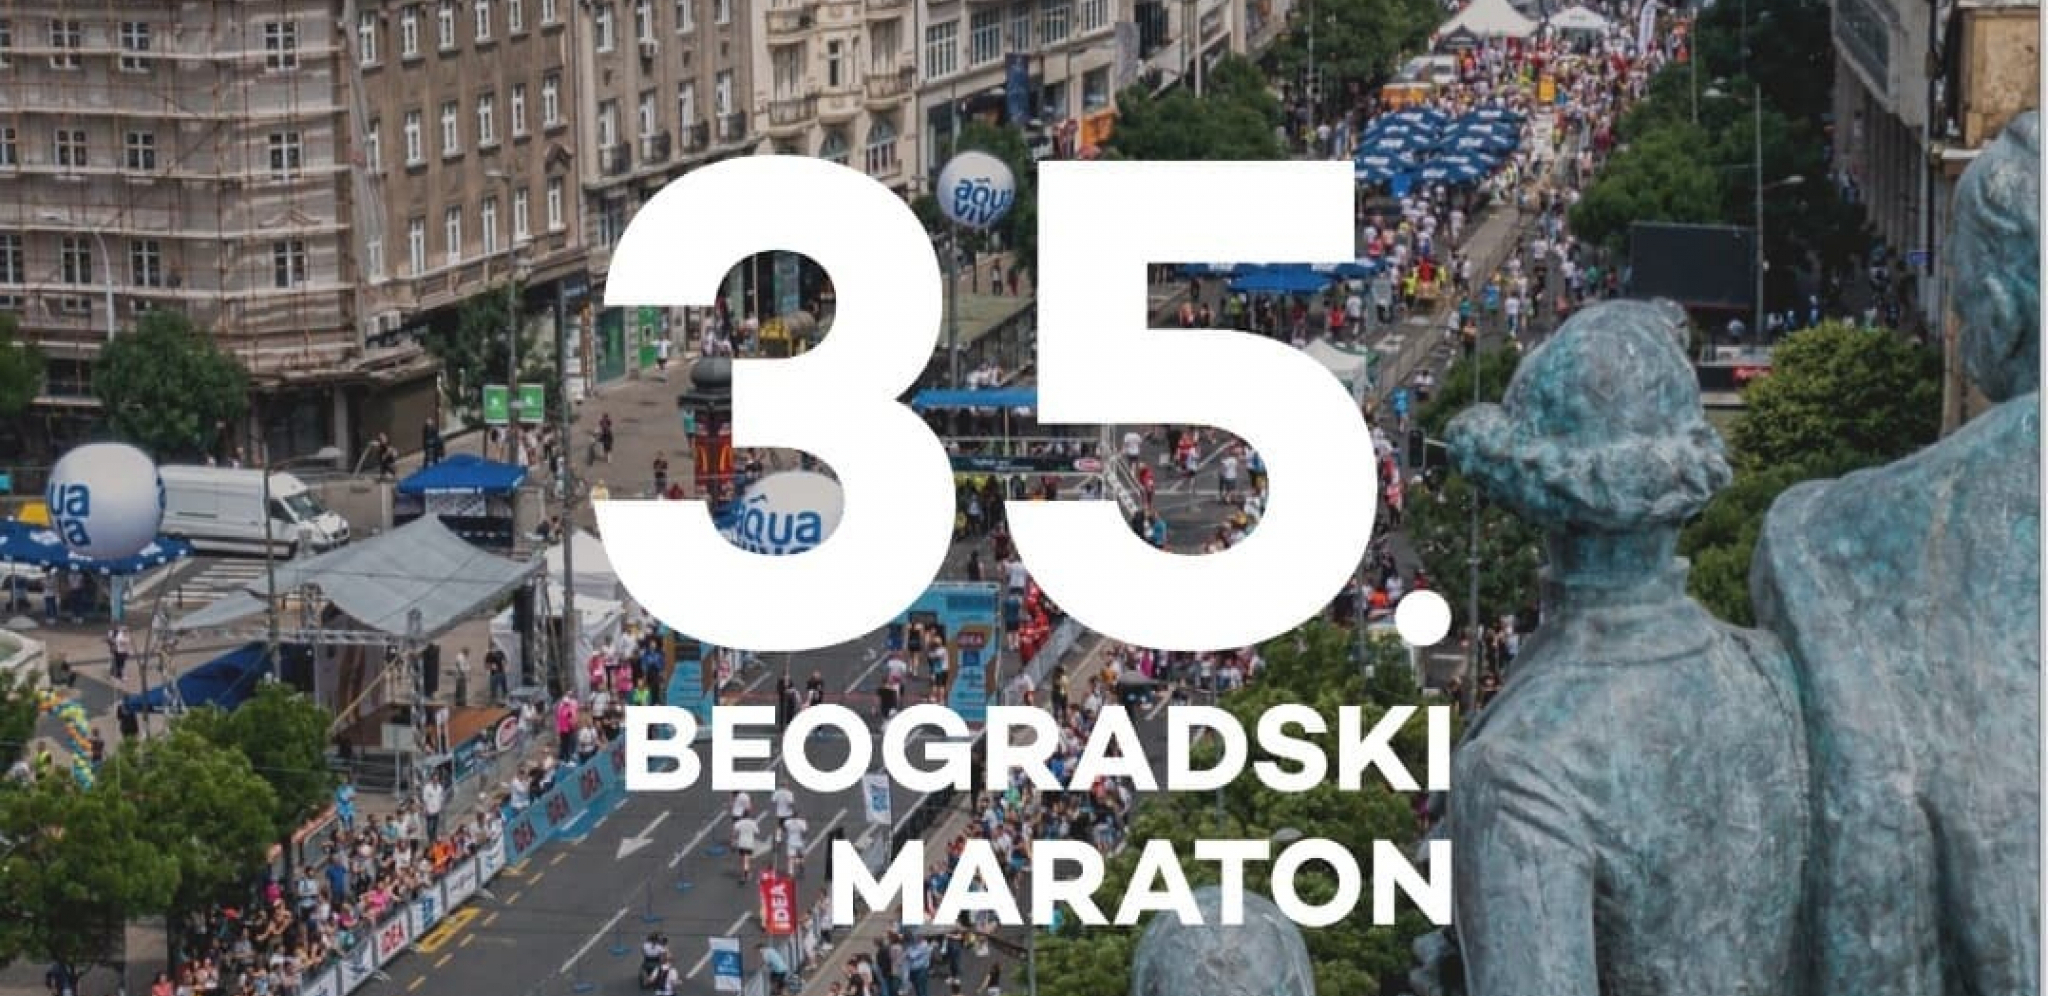 ODBROJAVANJE MOŽE DA POČNE! Još tačno 100 dana do 35. Beogradskog maratona!